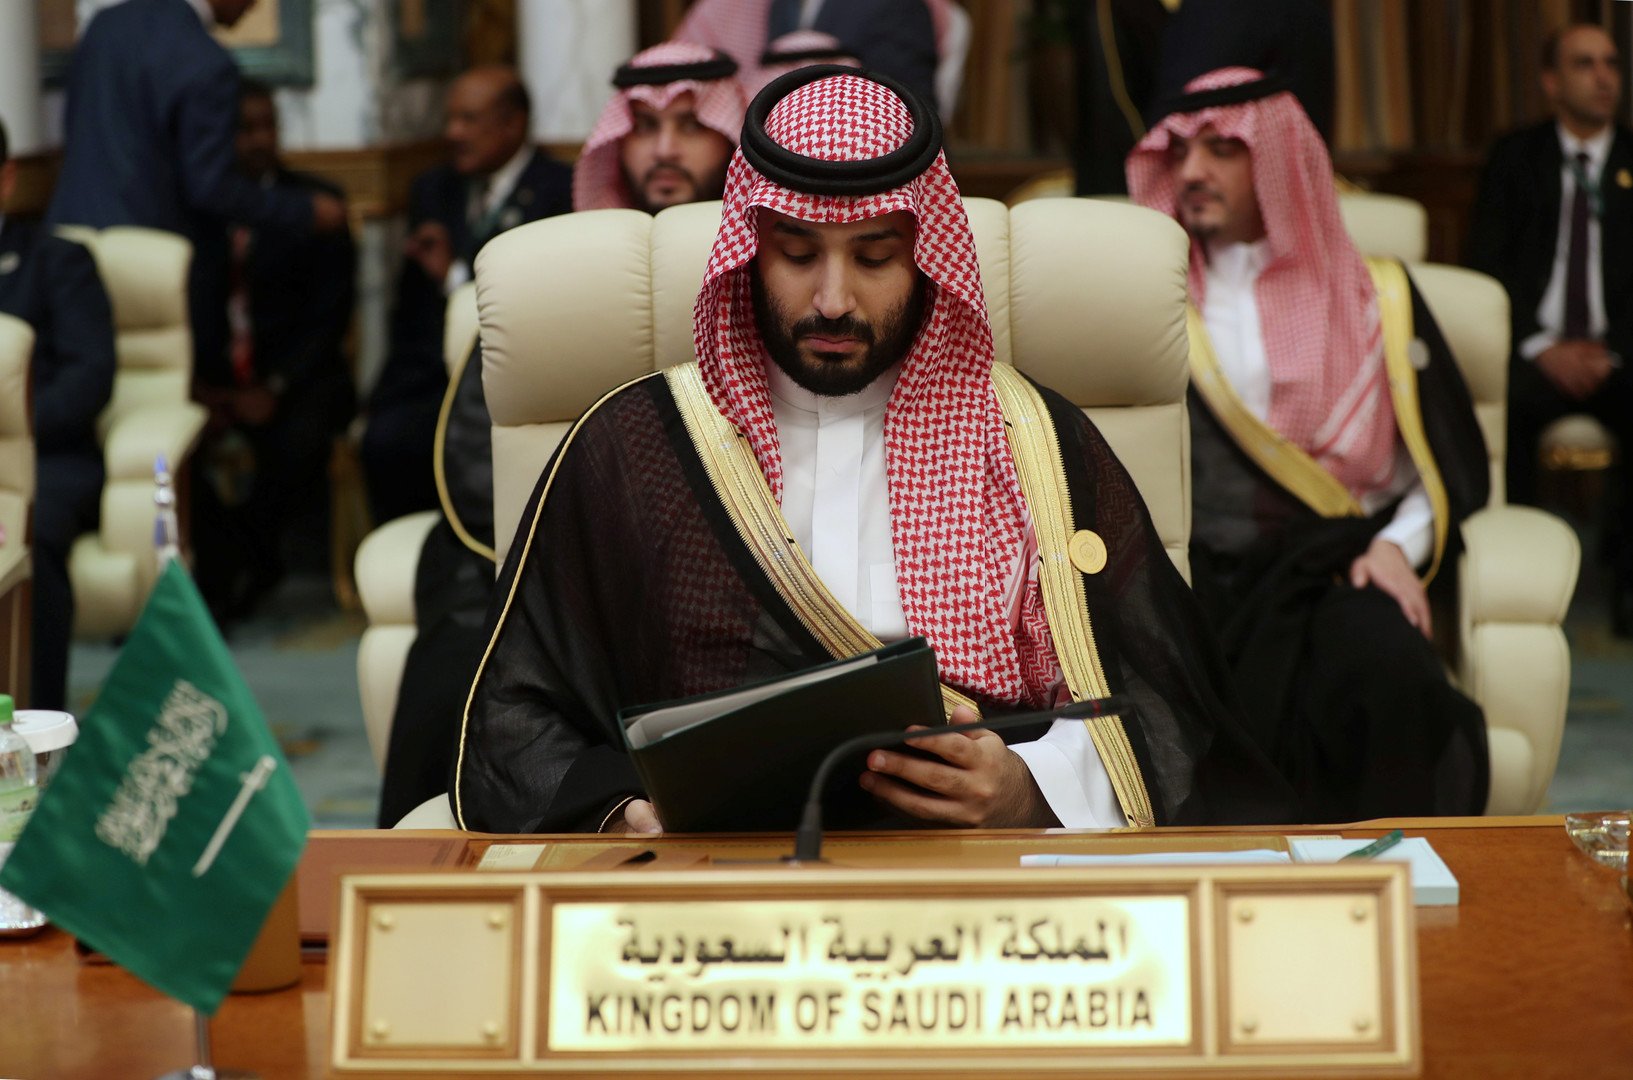 ردهة قصر الصفا تشهد مصافحة بين ولي العهد السعودي ورئيس الوزراء القطري